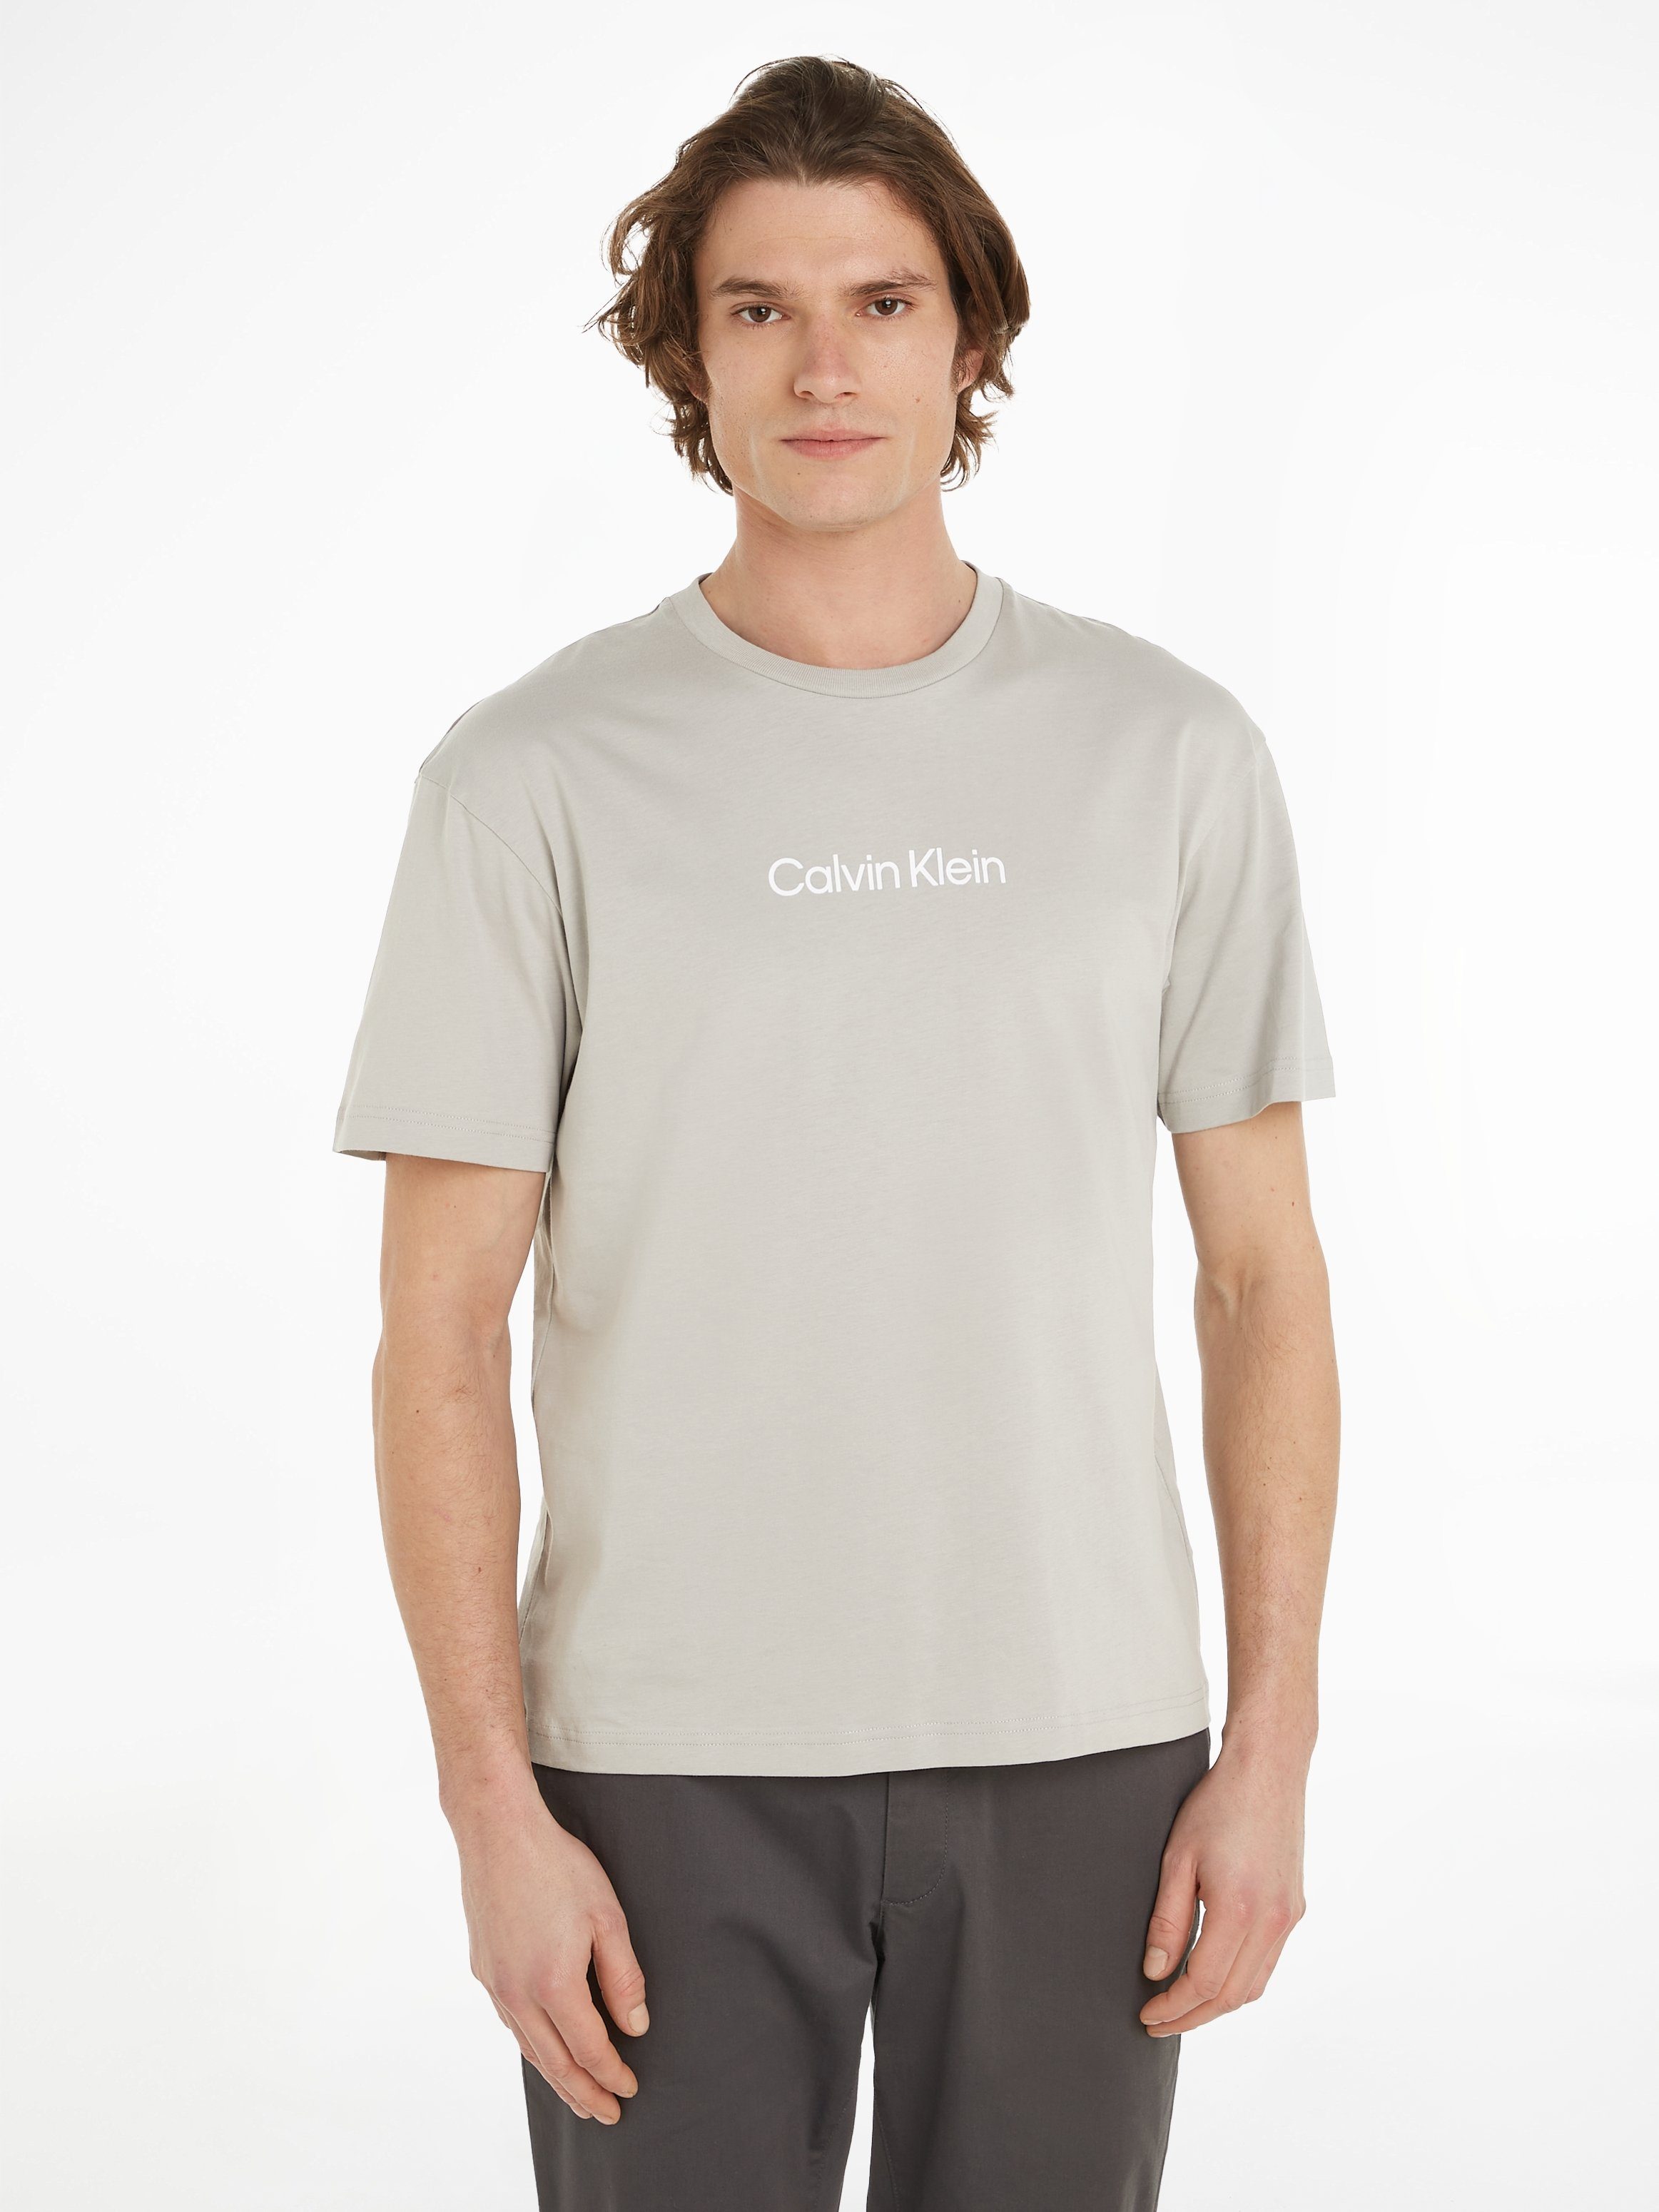 Klein COMFORT mit T-SHIRT LOGO HERO Gray Ghost aufgedrucktem Markenlabel T-Shirt Calvin